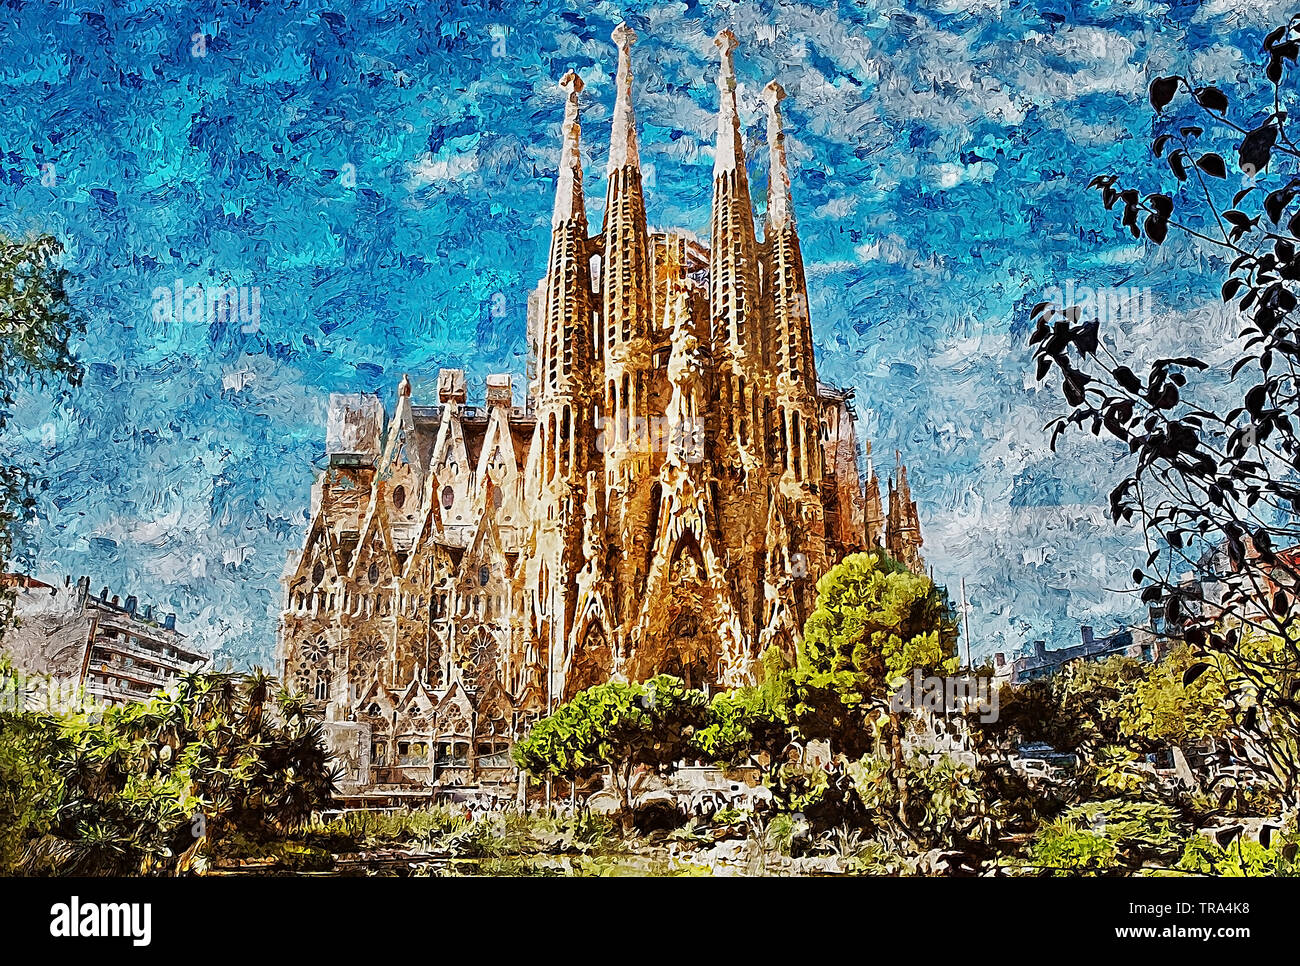 Die Sagrada Familia, Barcelona. Eine große katholische Basilika Meisterwerk des Architekten Antoni Gaudí, der führenden Exponenten des Katalanischen Modernismus. Stockfoto